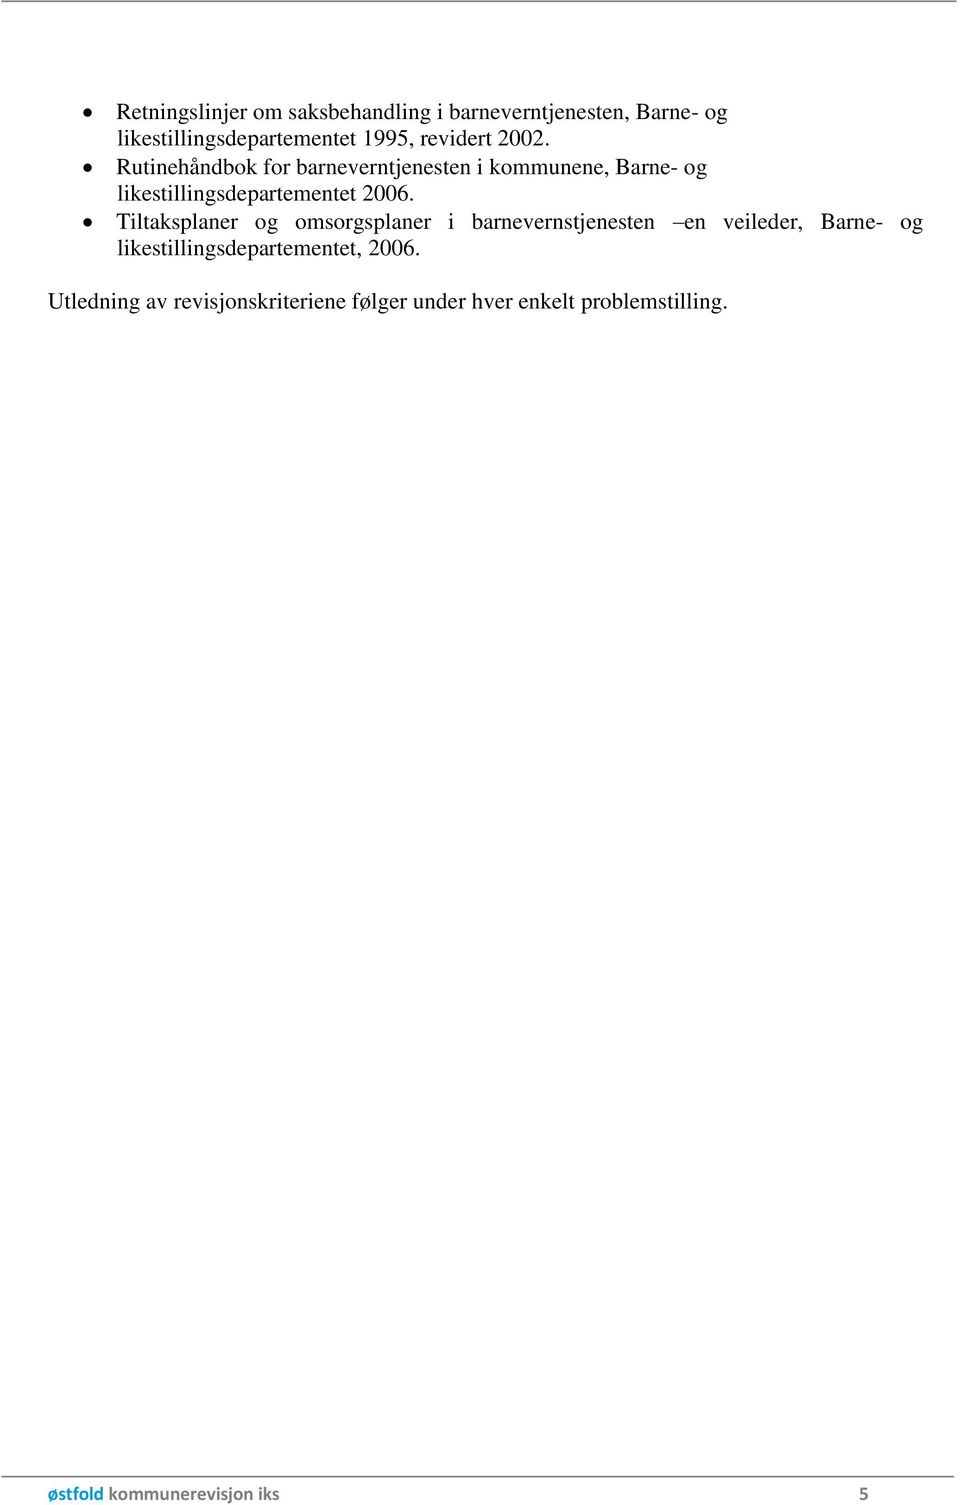 Rutinehåndbok for barneverntjenesten i kommunene, Barne- og likestillingsdepartementet 2006.